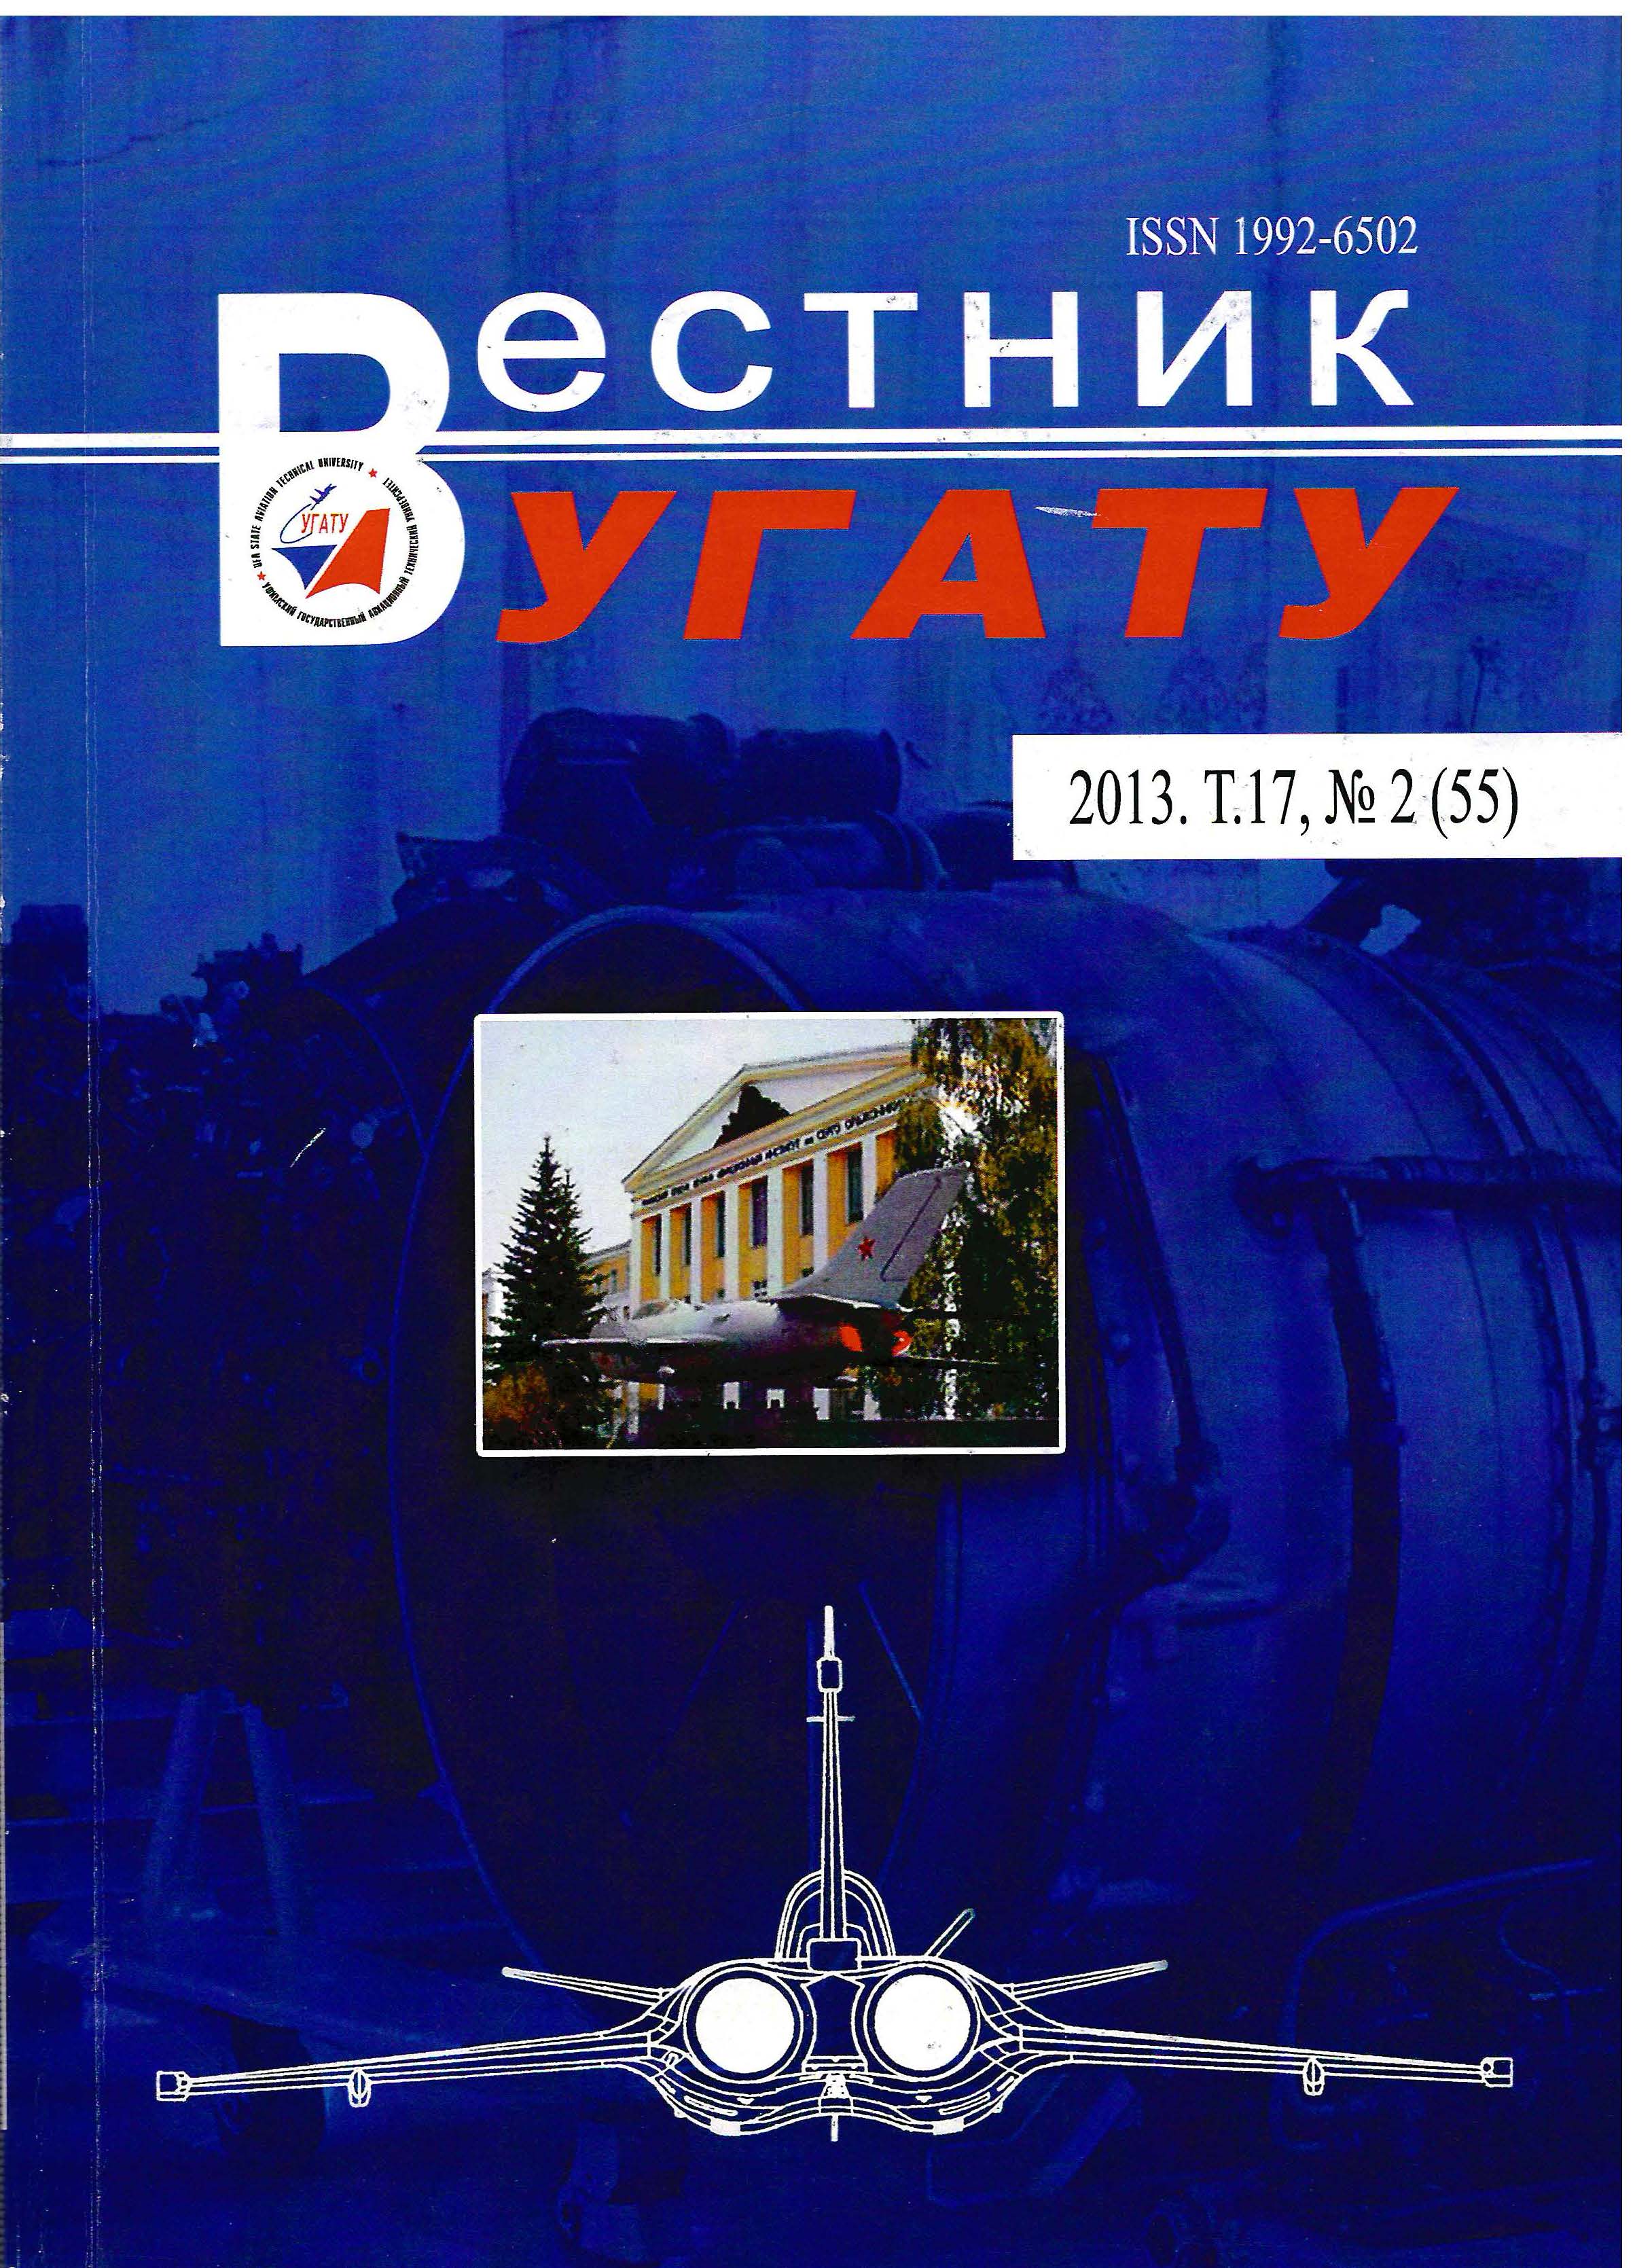 					View Vol. 17 No. 2 (55) (2013): Вестник УГАТУ
				